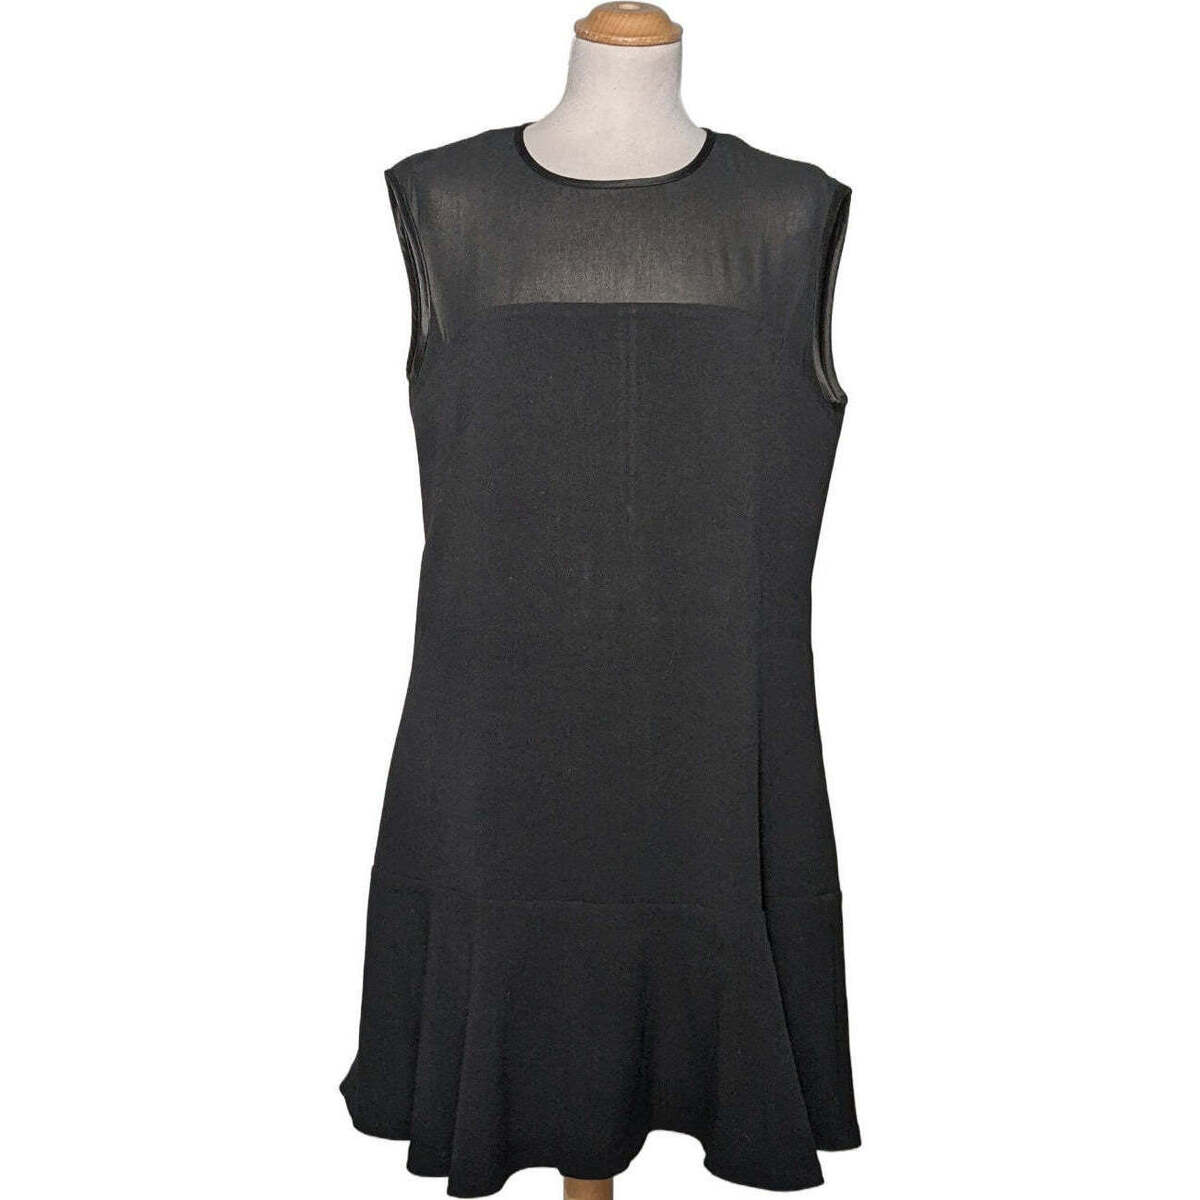 Vêtements Femme Les Tropéziennes par M Be robe courte  40 - T3 - L Noir Noir